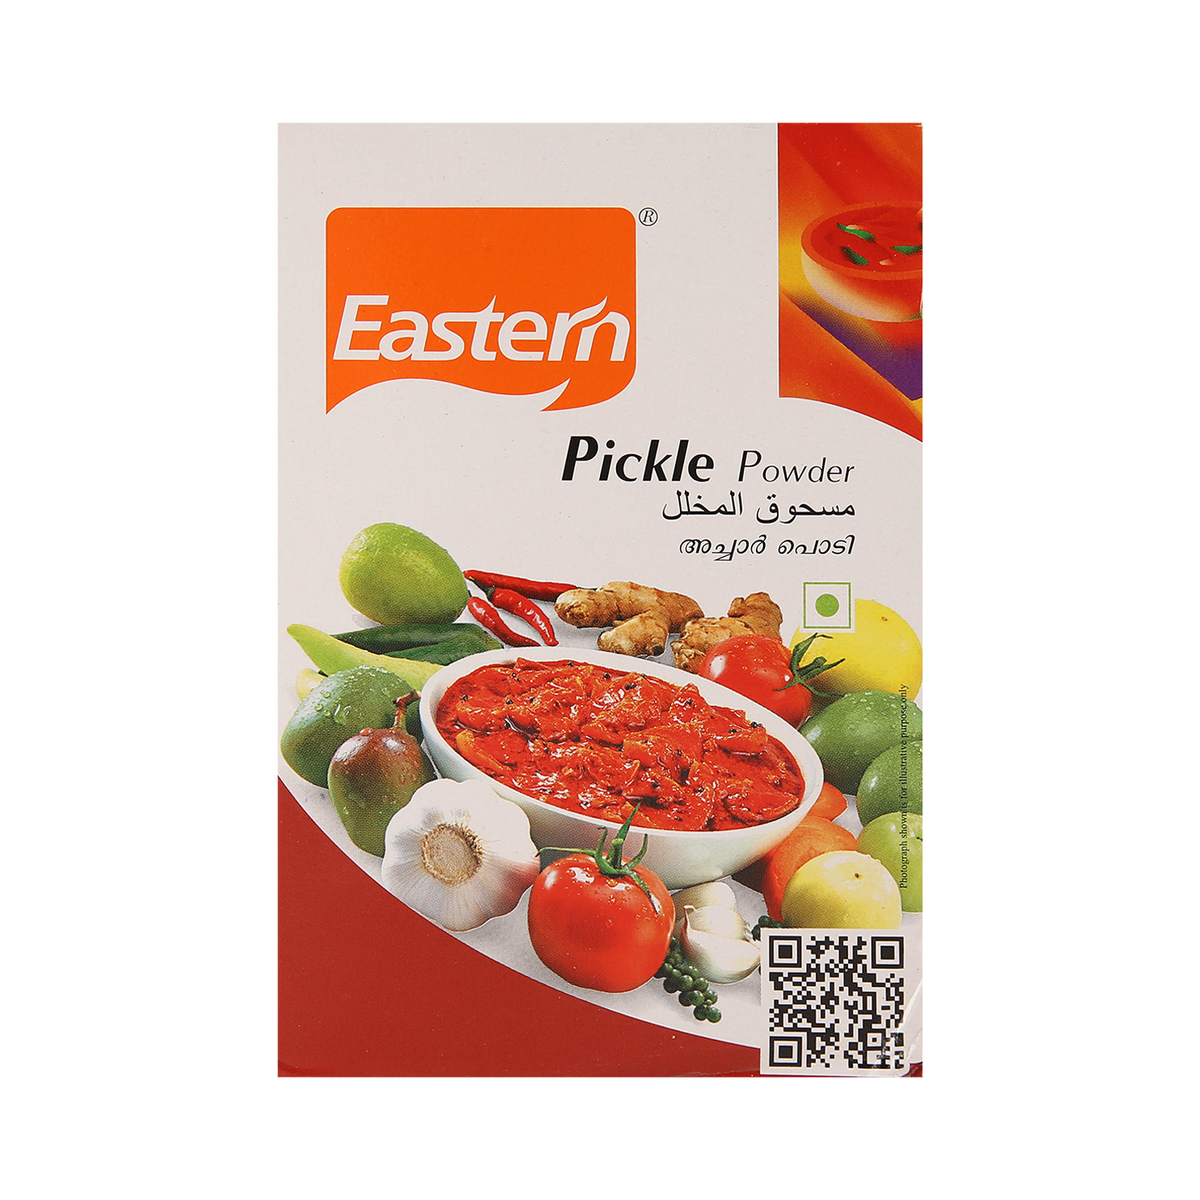 Eastern Pickle Powder 165g